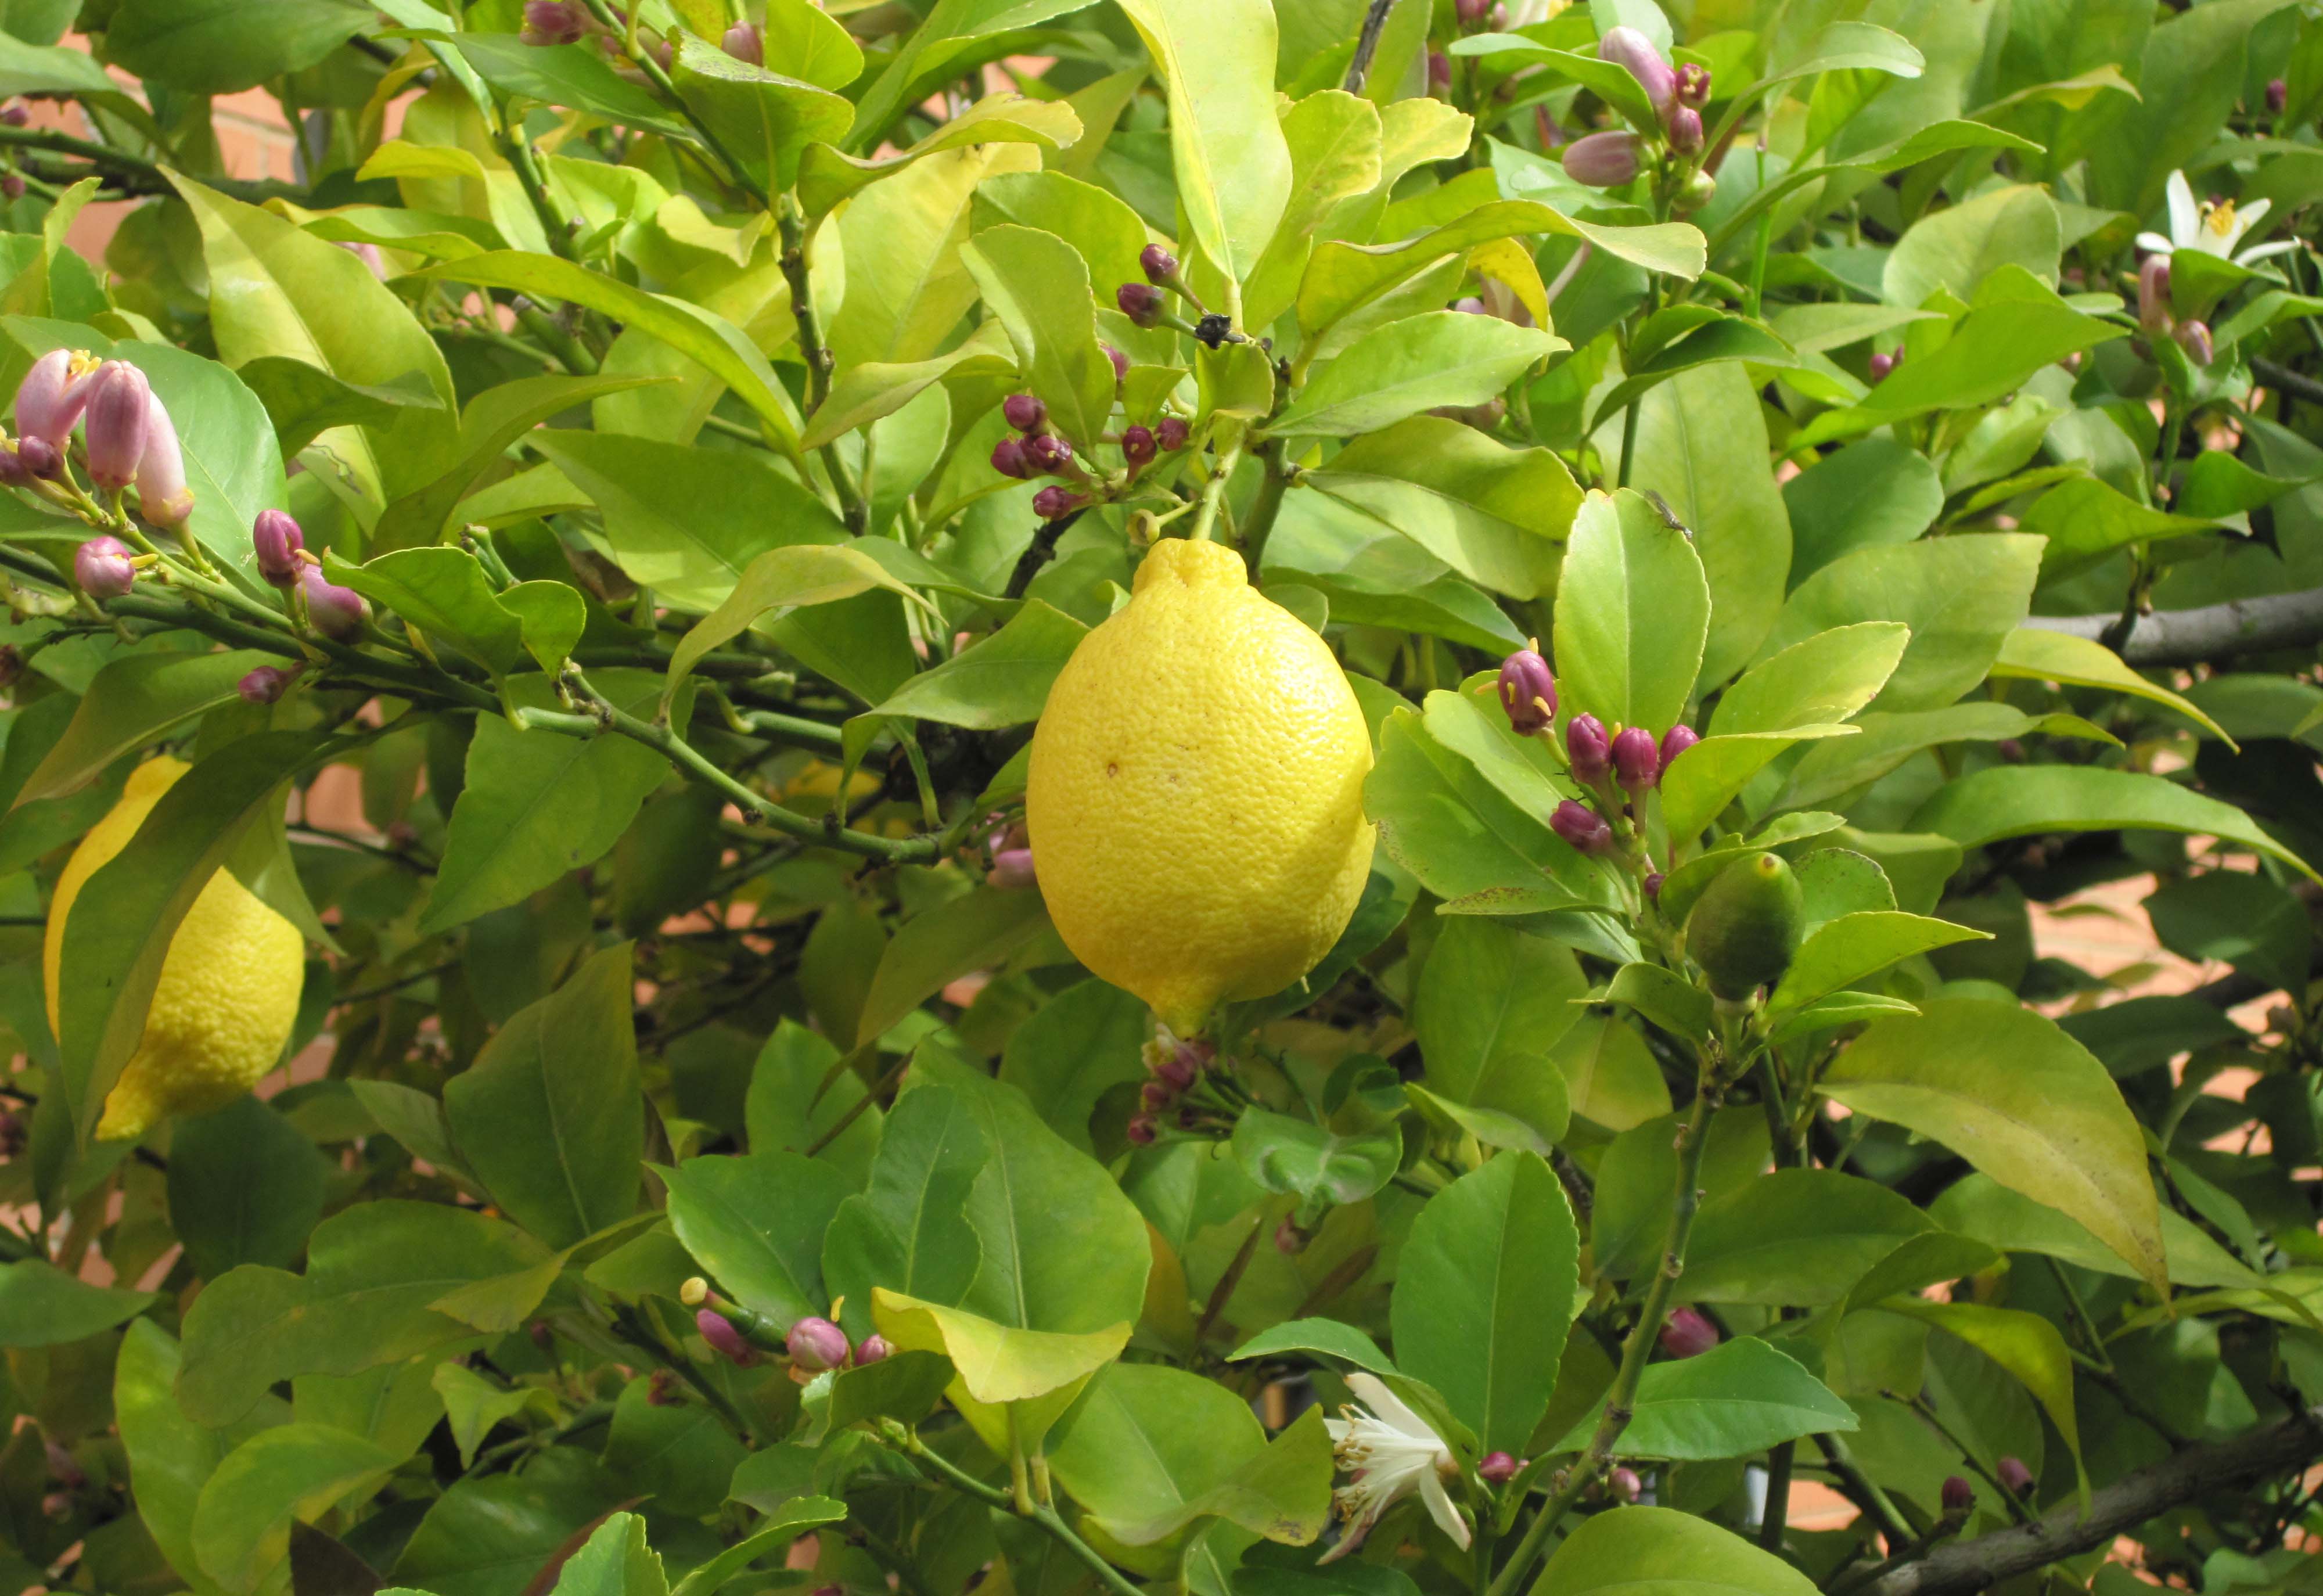 柠檬又称柠果、洋柠檬、益母果等。柠檬因其味极酸，孕妇最喜食，故称益母果或益母子。柠檬中含有丰富的柠檬酸，因此被誉为“柠檬酸仓库”。